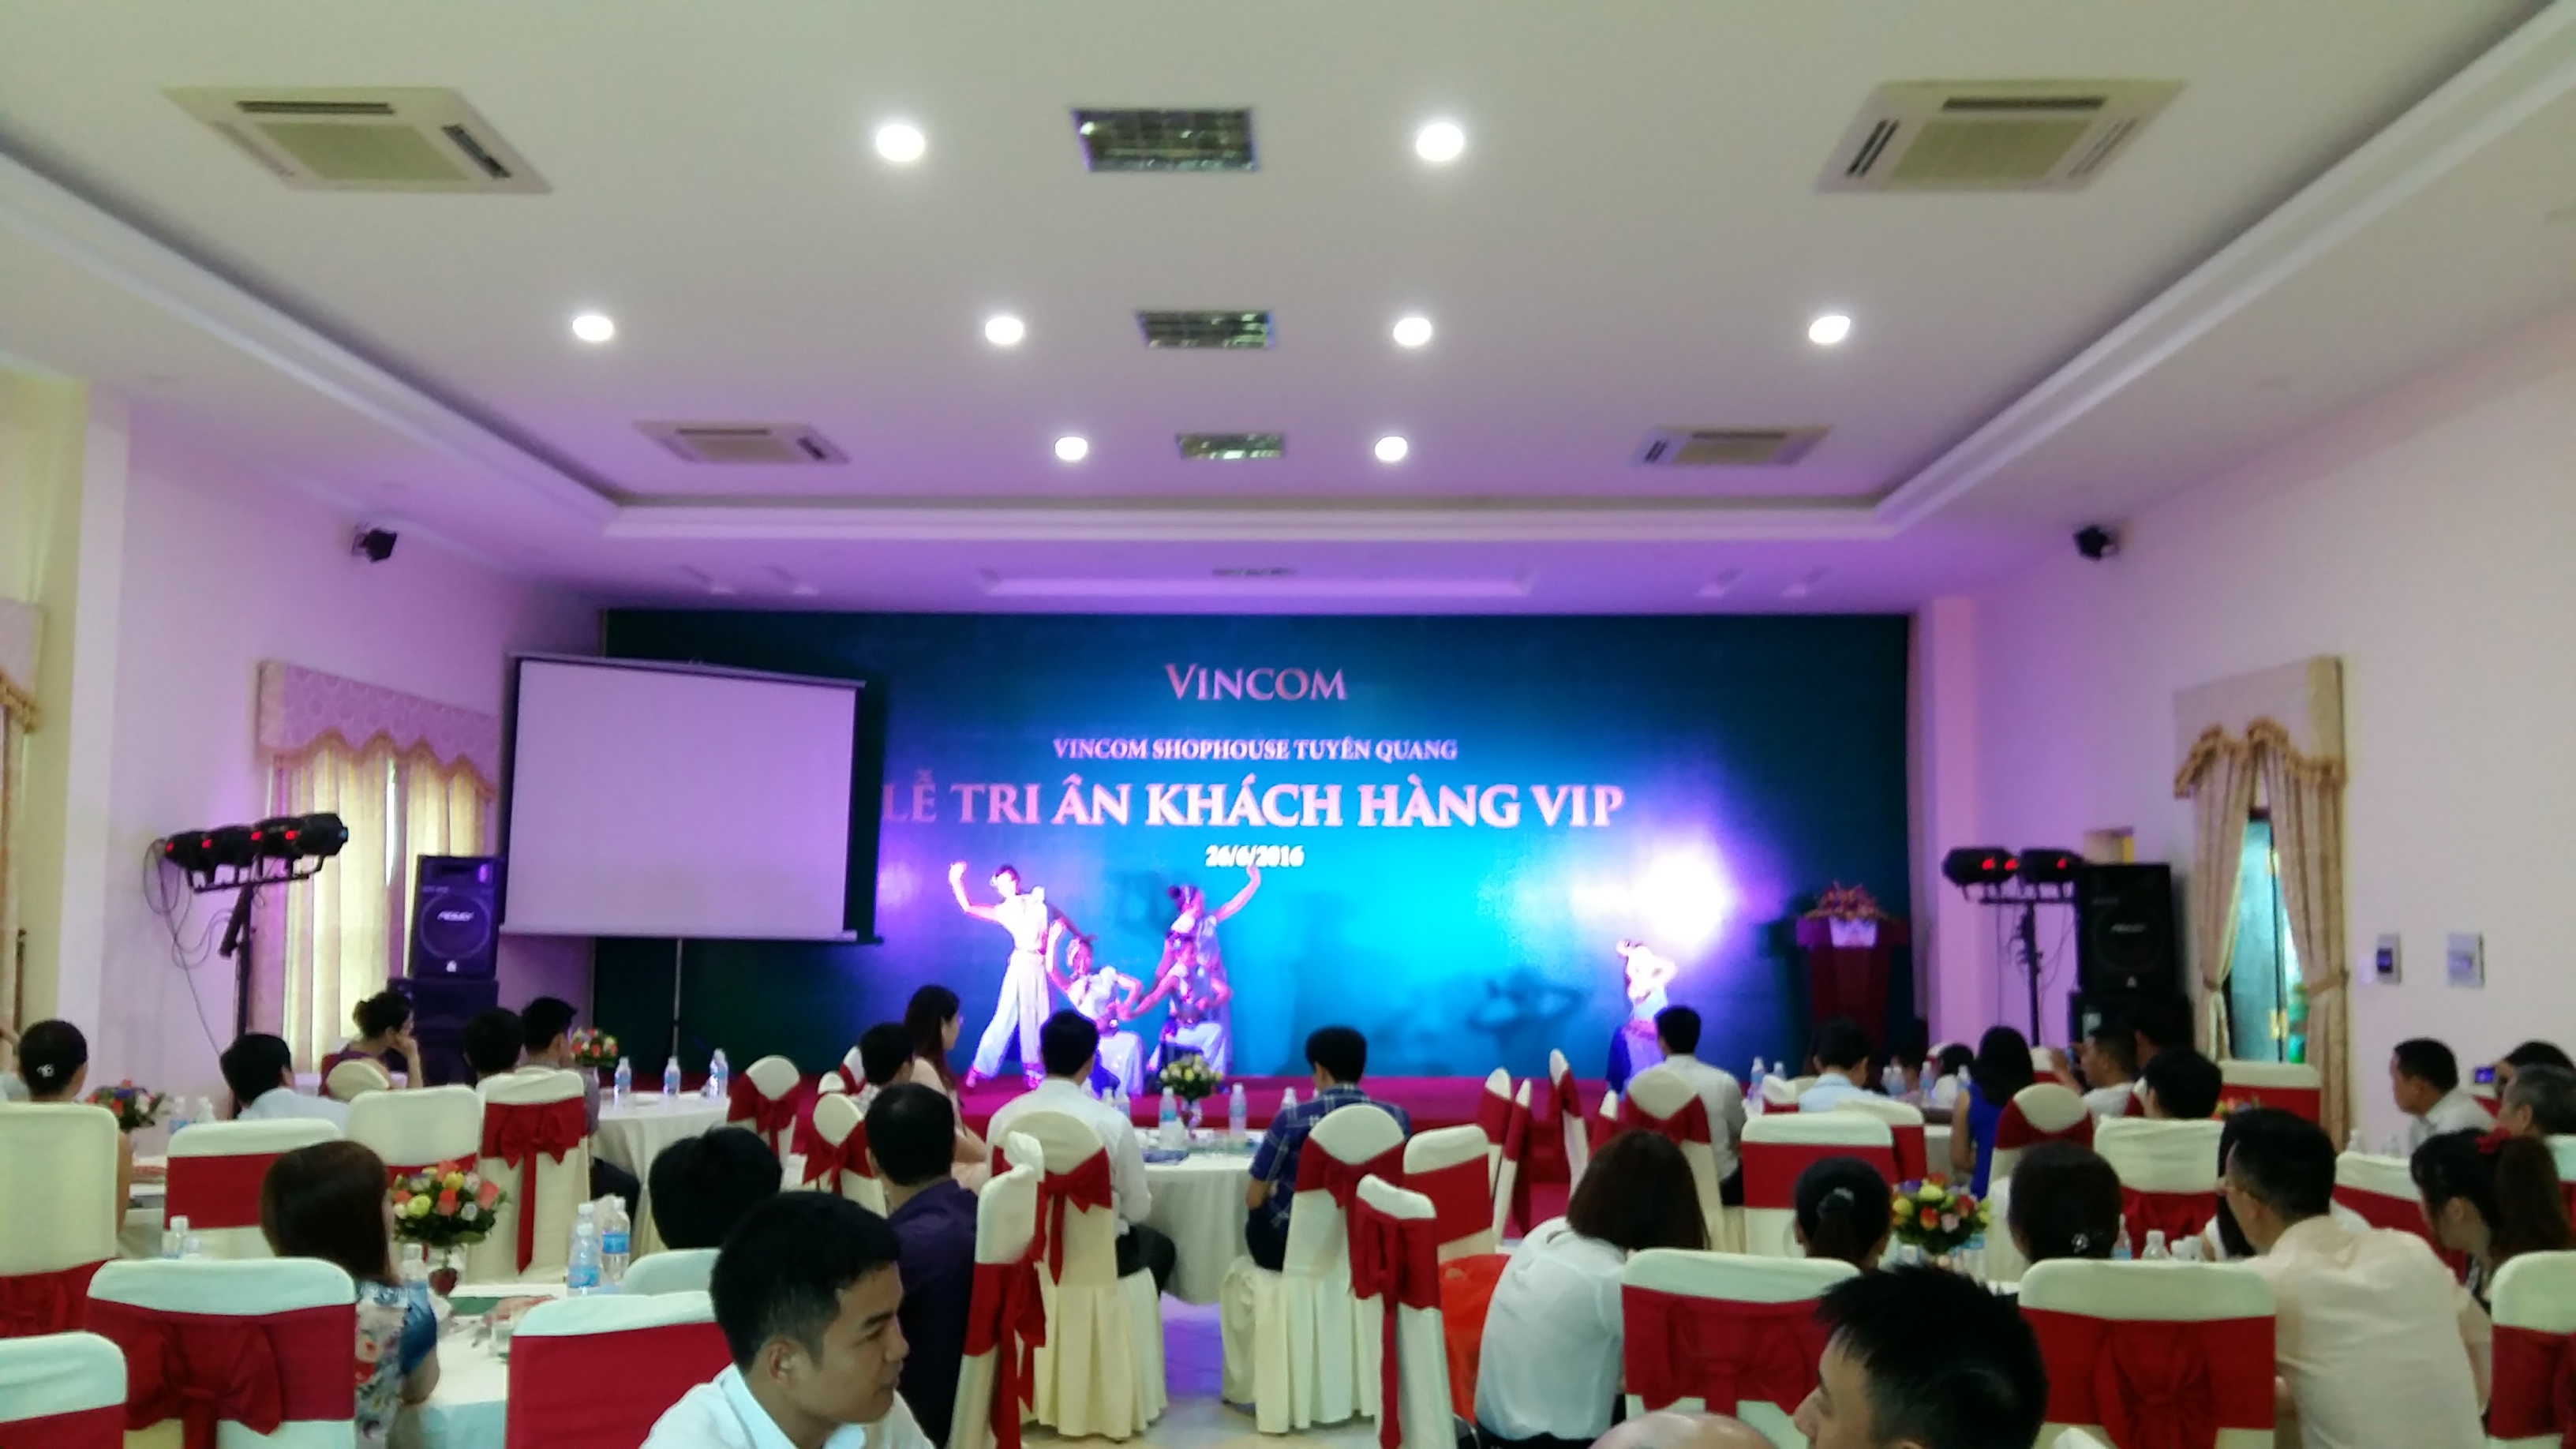 Sự kiện xanh, cho thuê địa điểm tổ chức sự kiện, địa điểm tổ chức sự kiện tại Tuyên Quang, Viet Green media